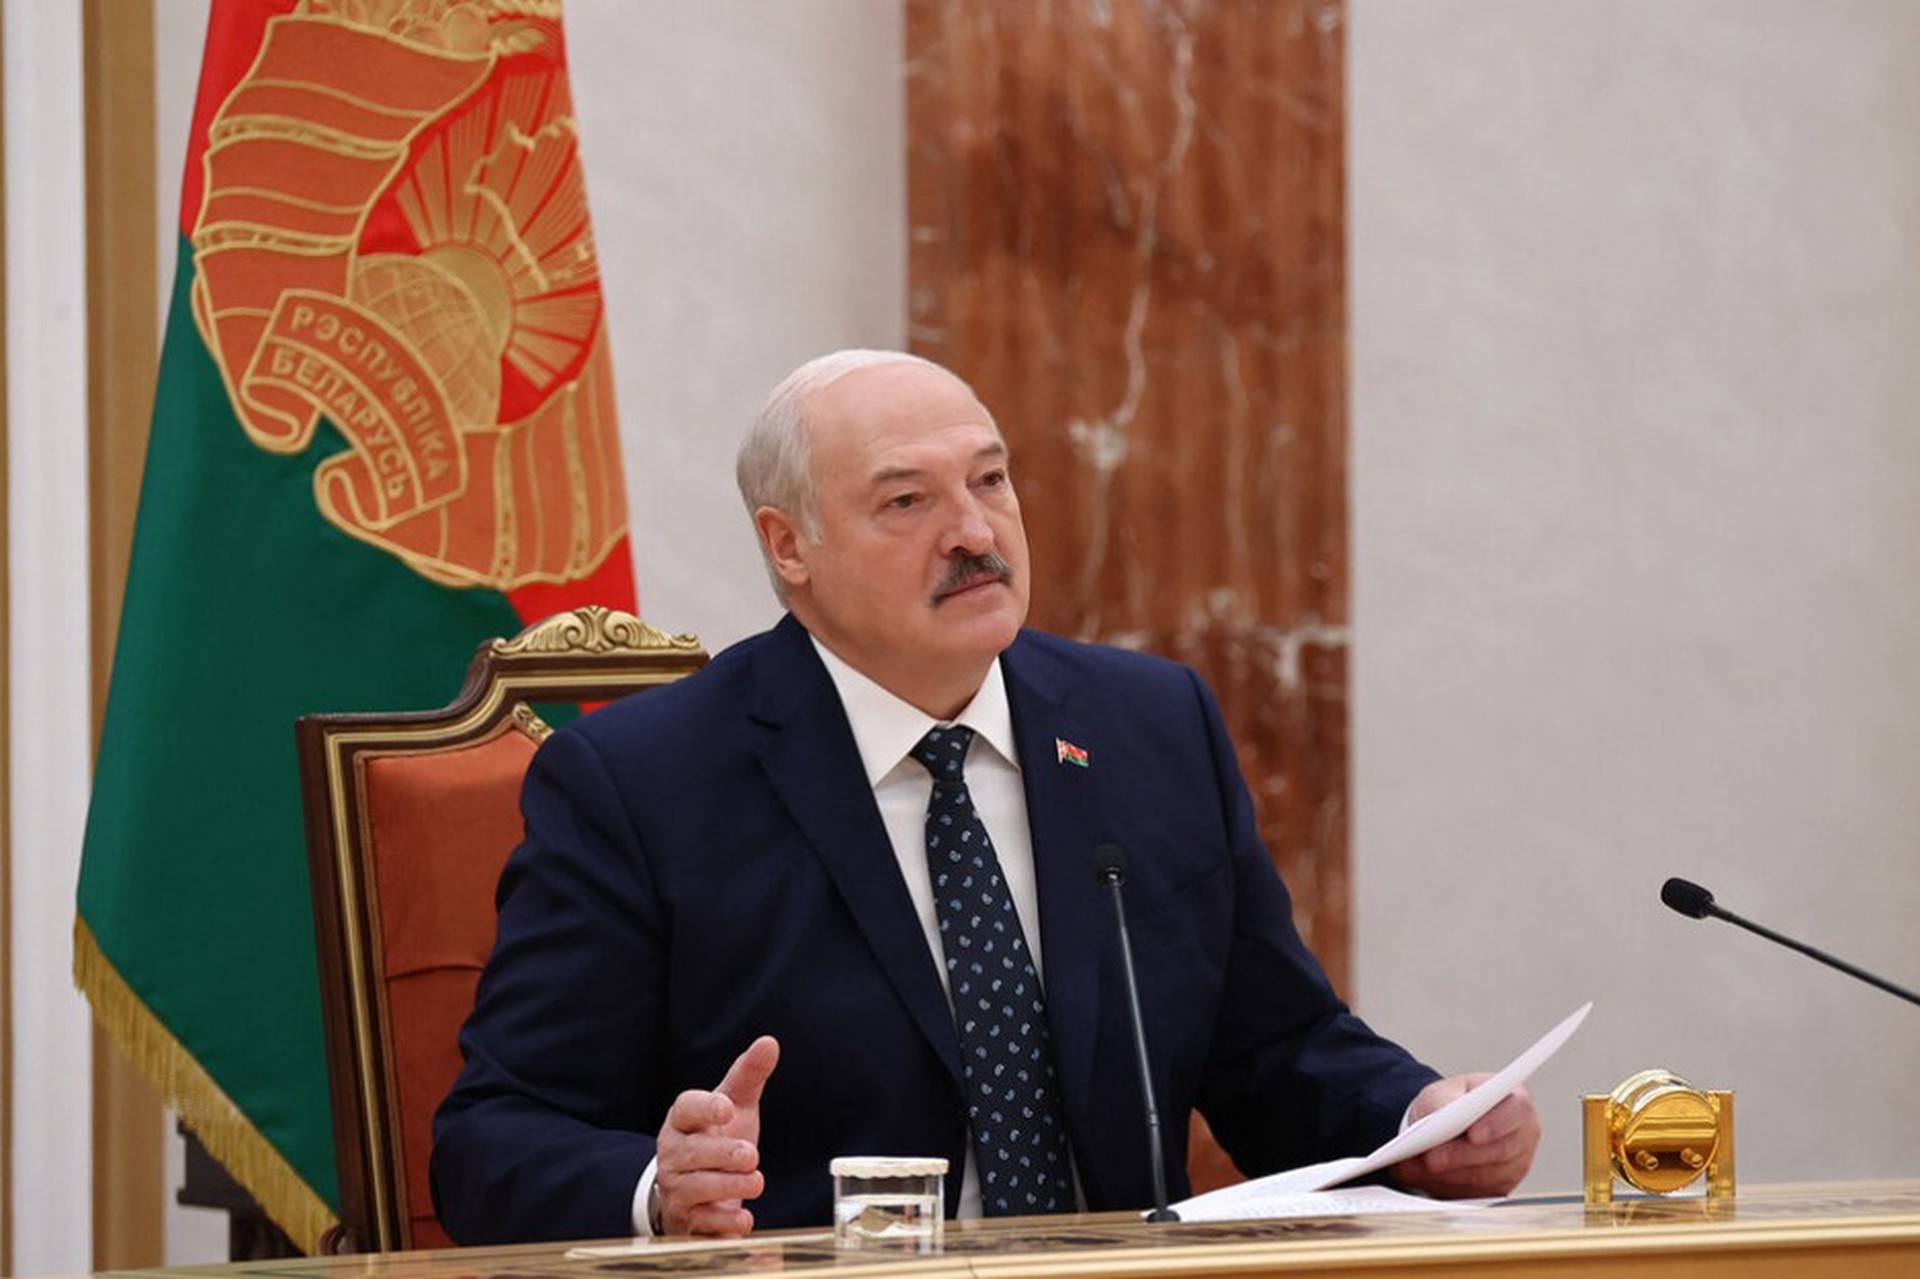 Политологи объяснили слова Лукашенко о том, что «весь мир вздрогнет»